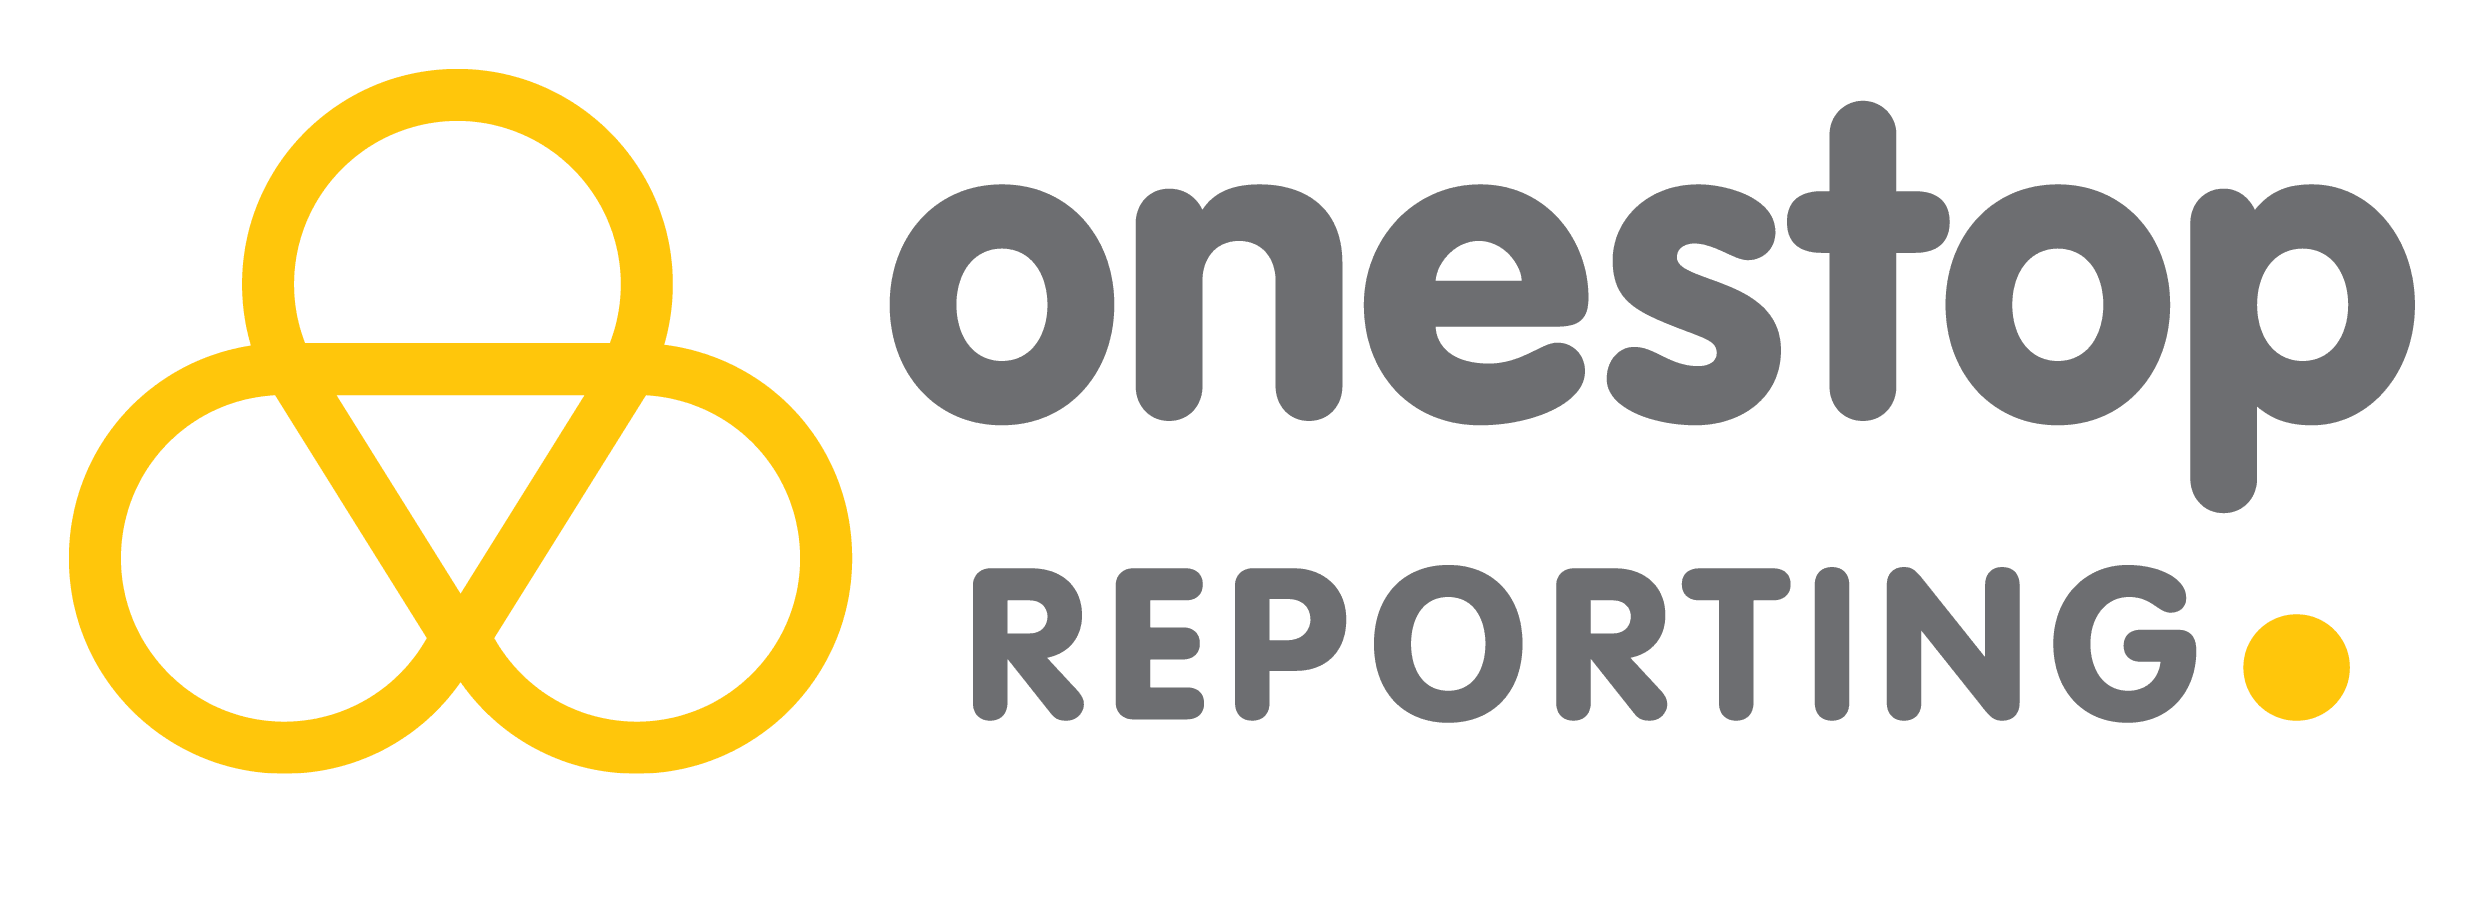 Onestop Reporting logo